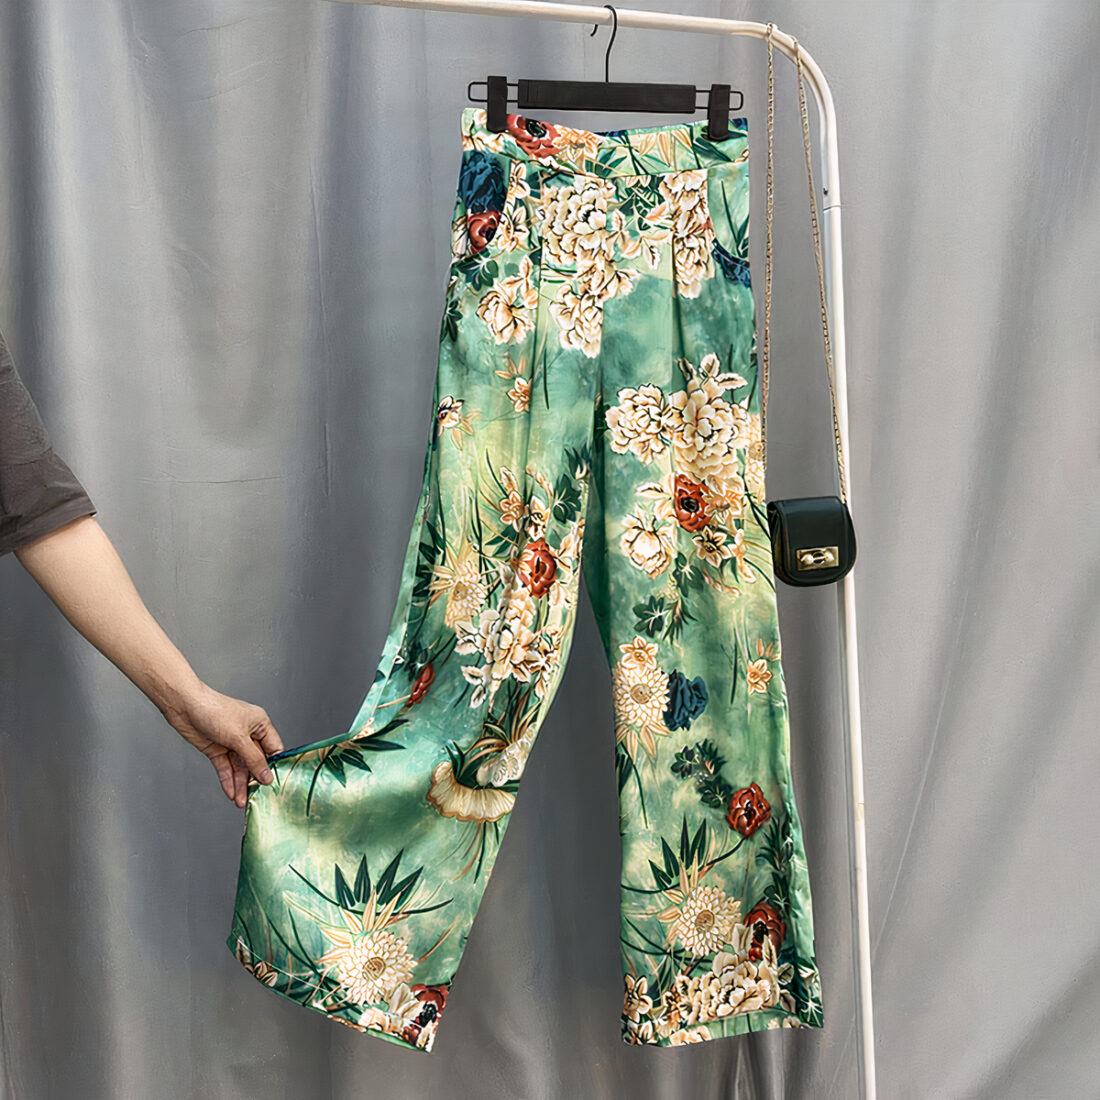 Pantalon en satin vert avec motif à fleurs posé sur un ceintre. Une main soulève le bas de la jambe droite